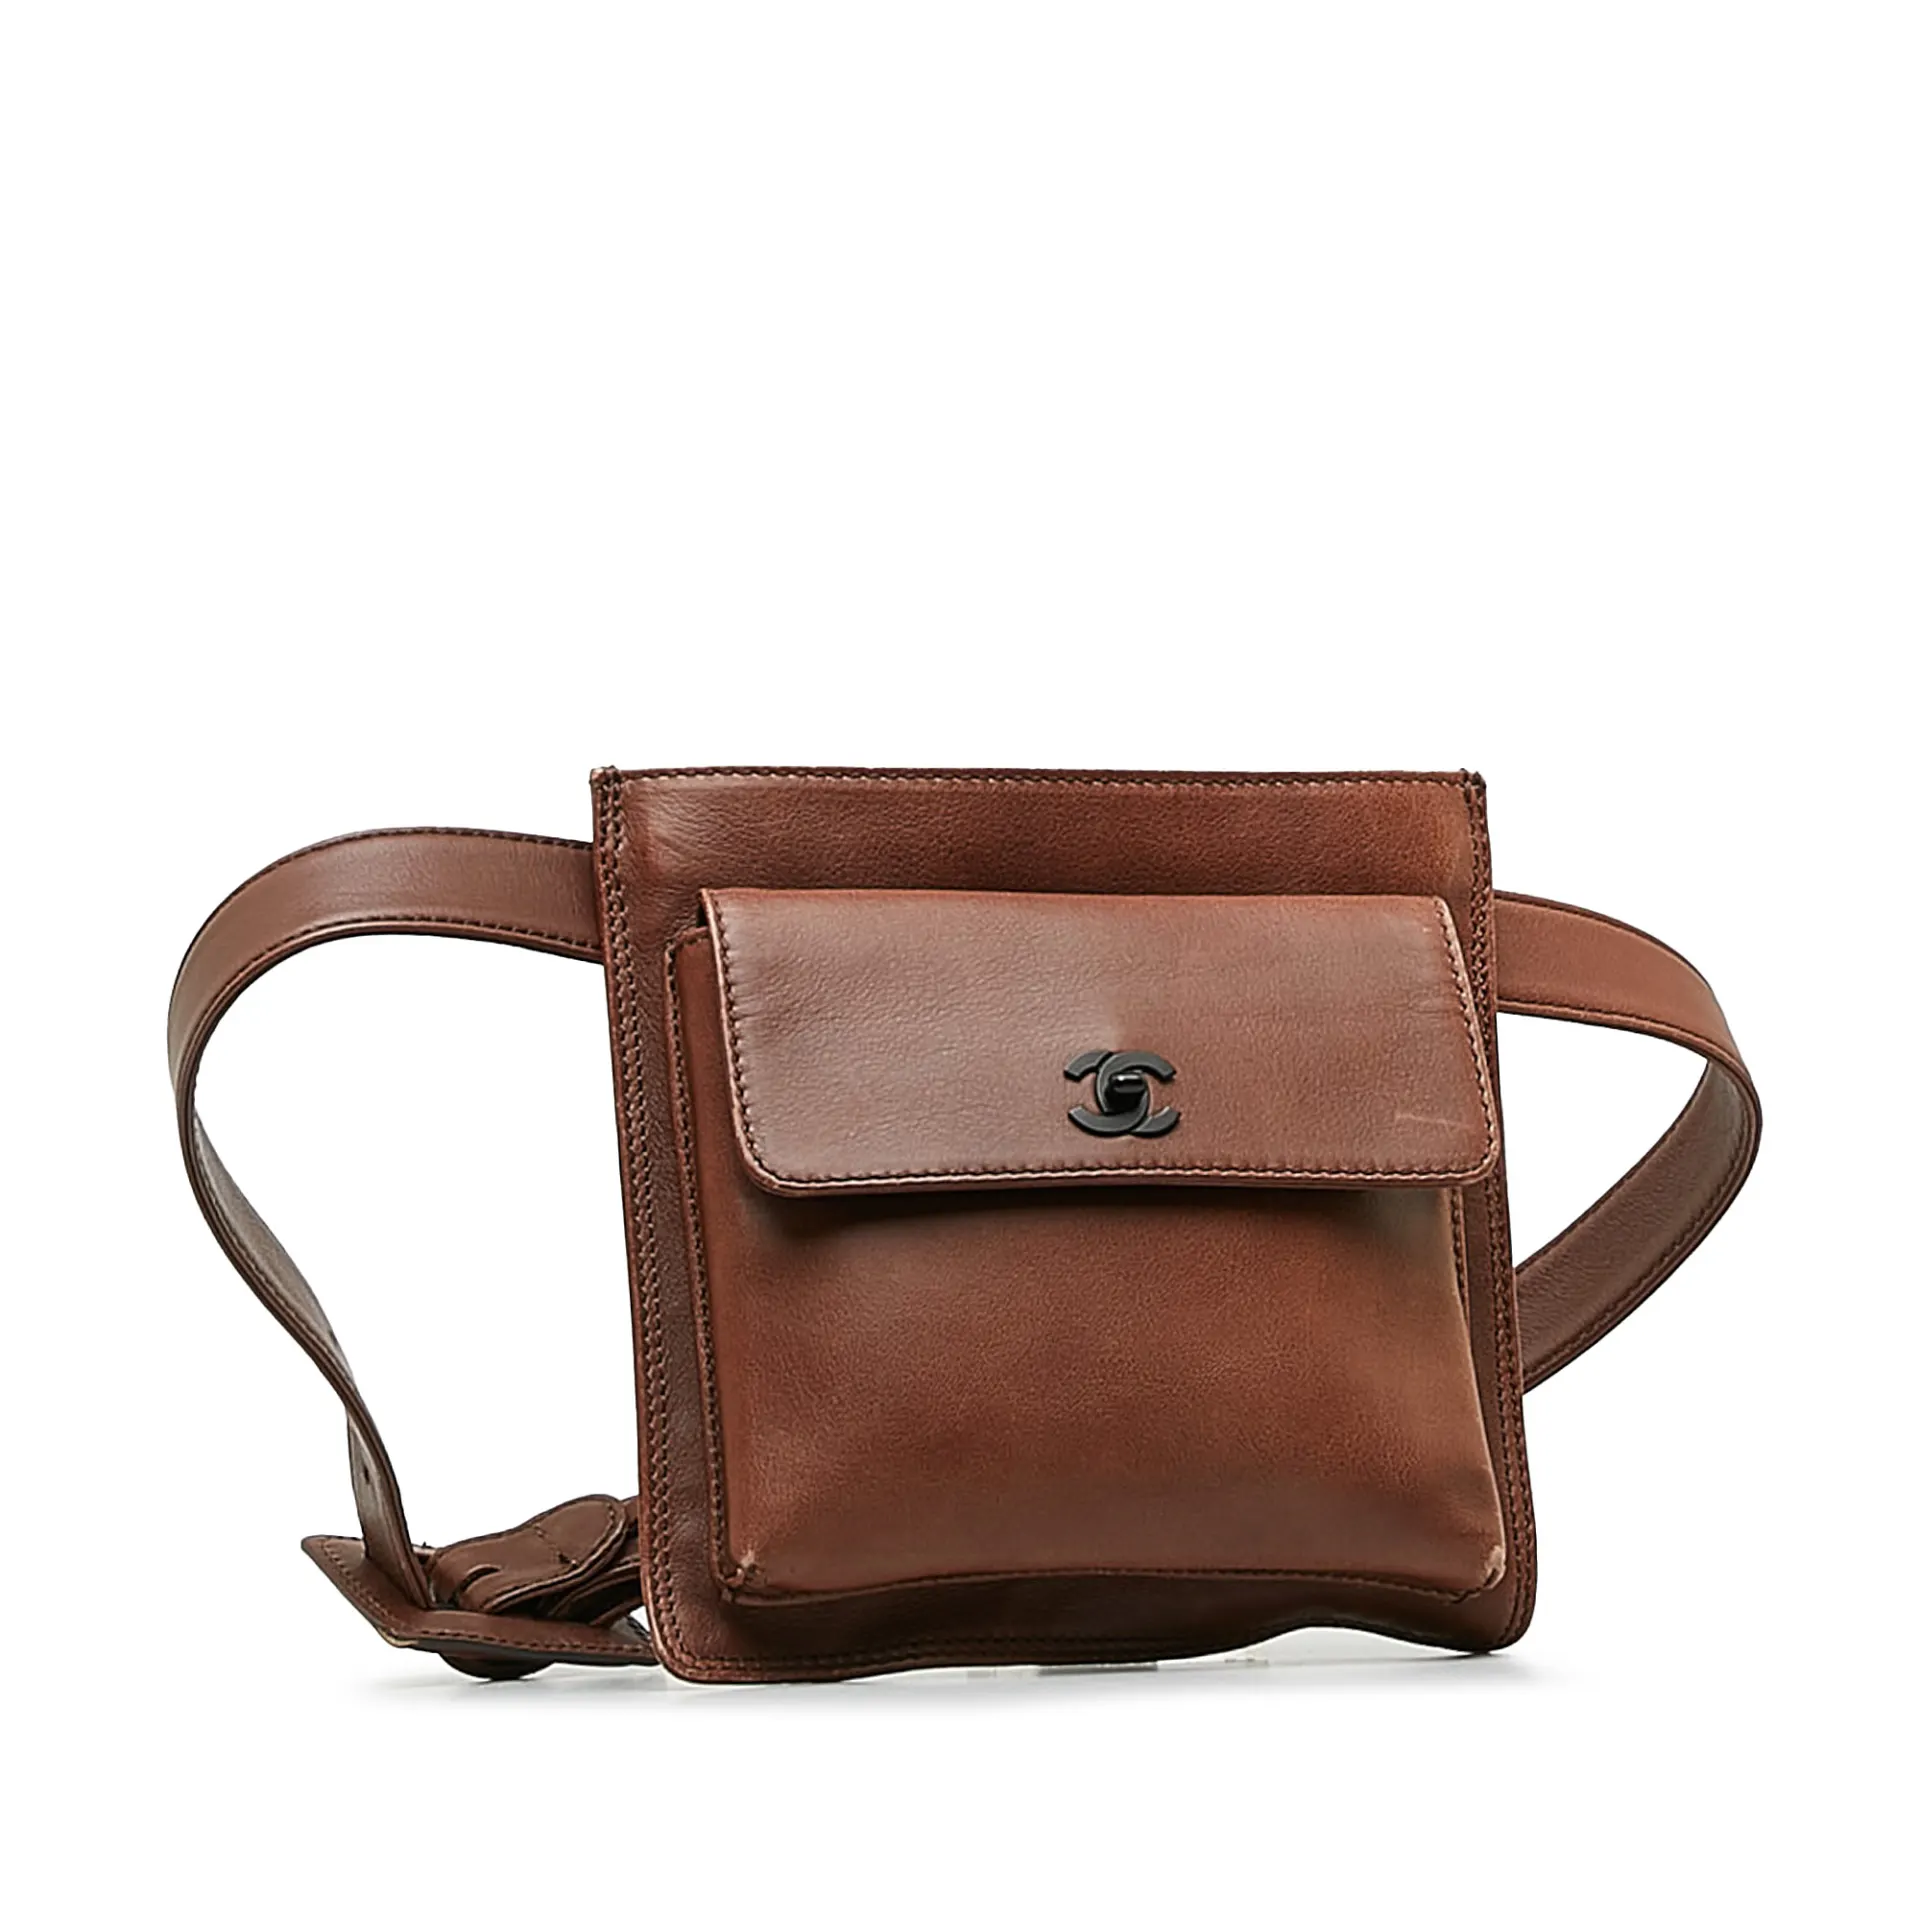 Chanel Cc Belt Bag